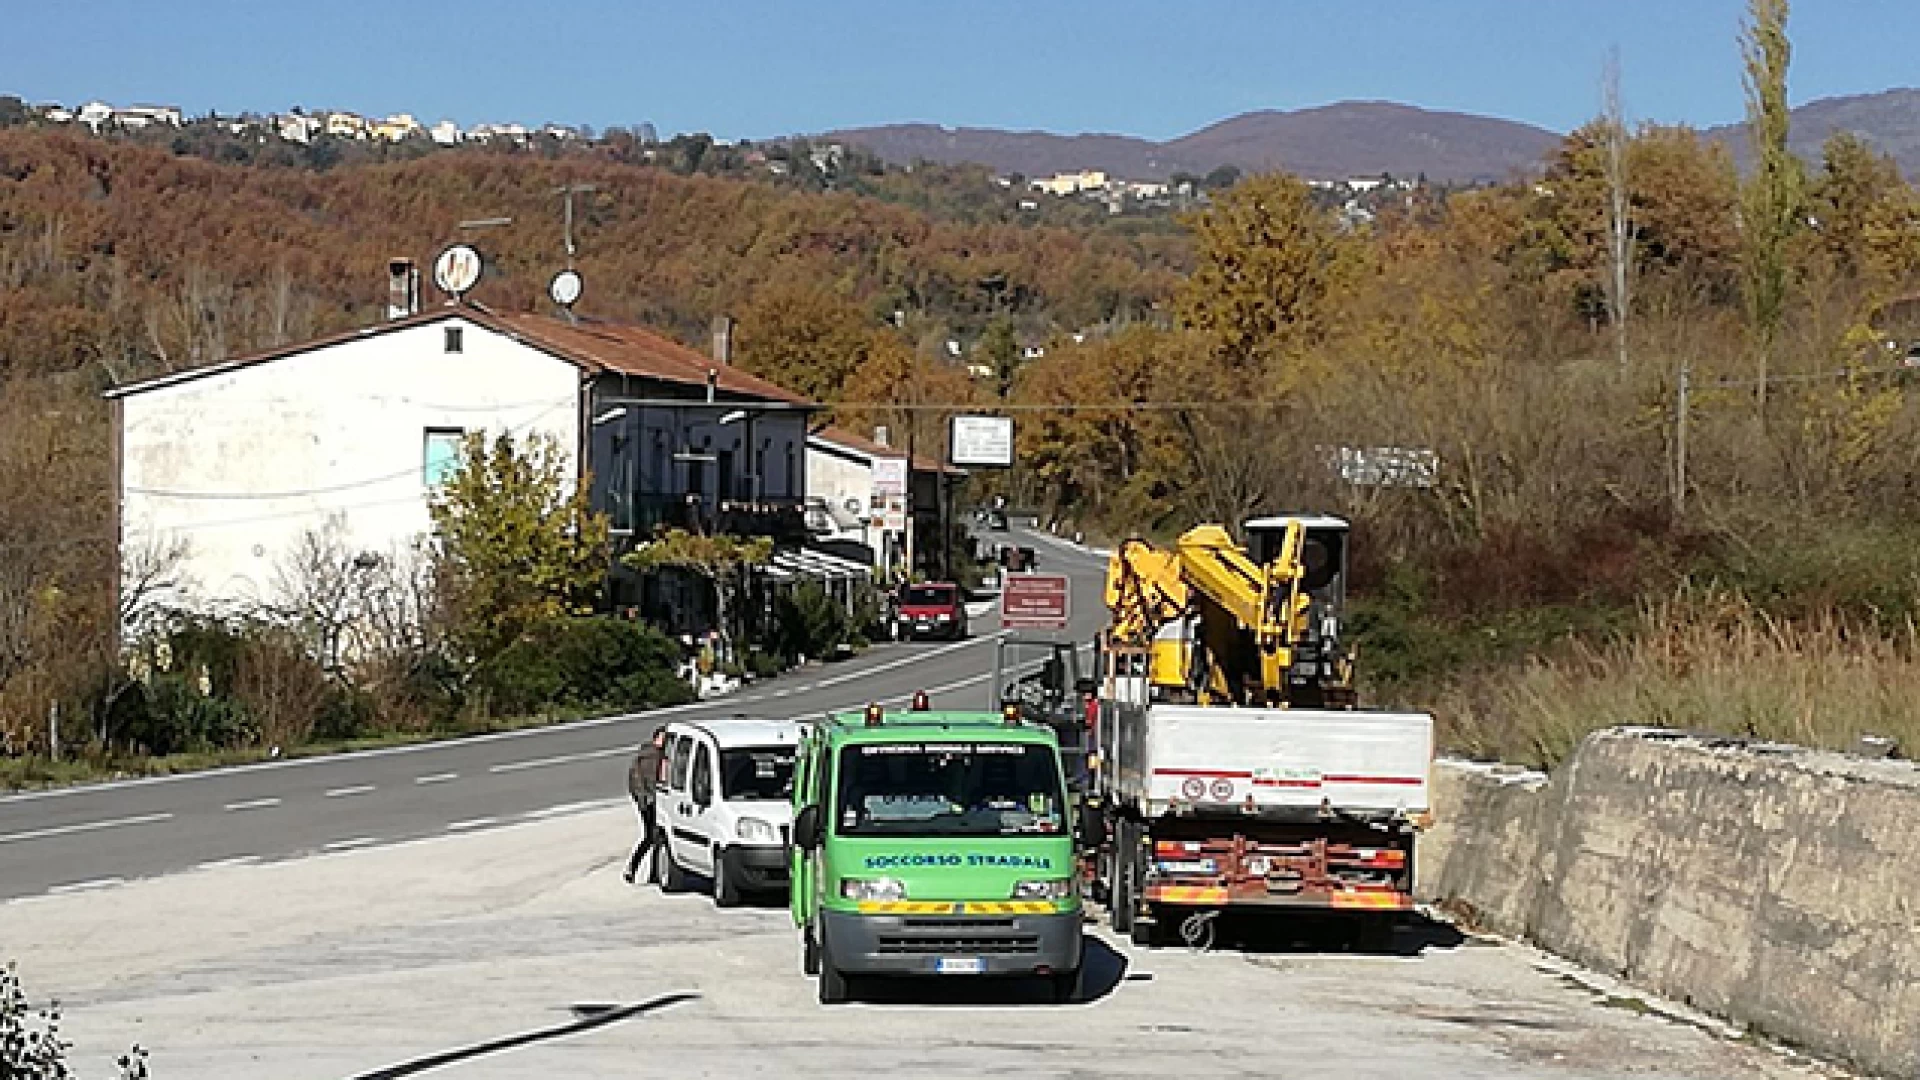 Colli a Volturno: un posto di blocco fa scoprire un camion ed una escavatrice rubati. Erano fermi sulla statale 158 da diversi mesi in una piazzola.